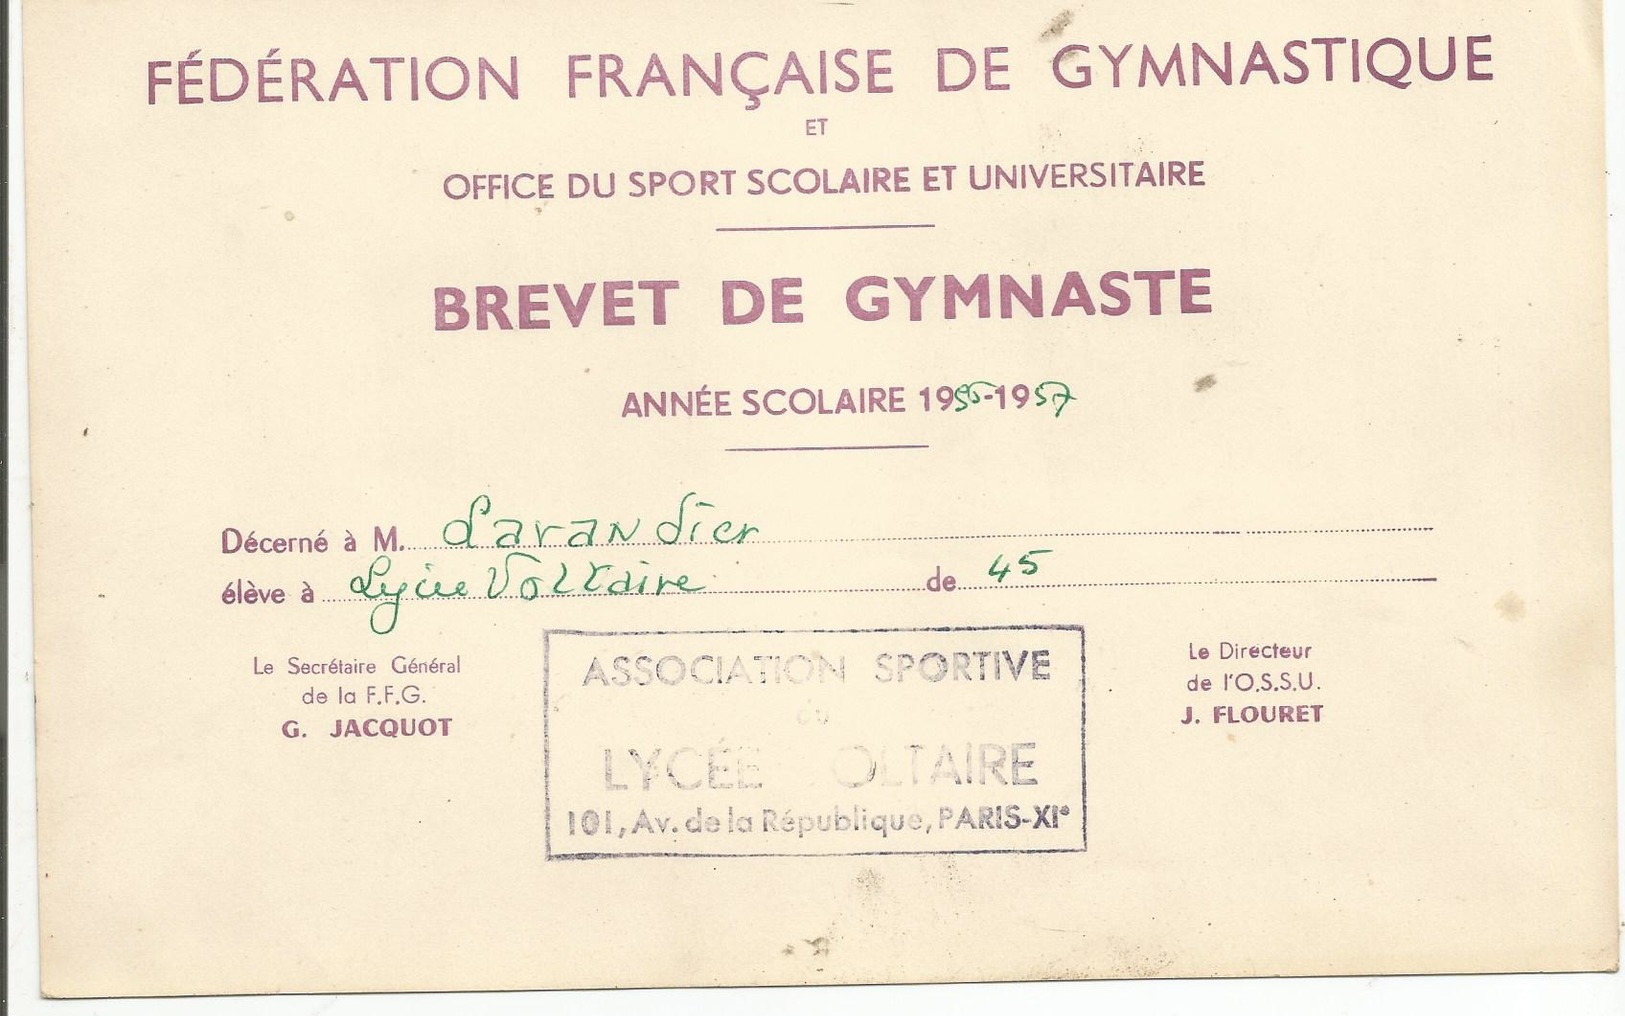 Brevet Federation Francaise De Gymnastique Lycée Voltaire Paris  1956.1957 - Diploma & School Reports